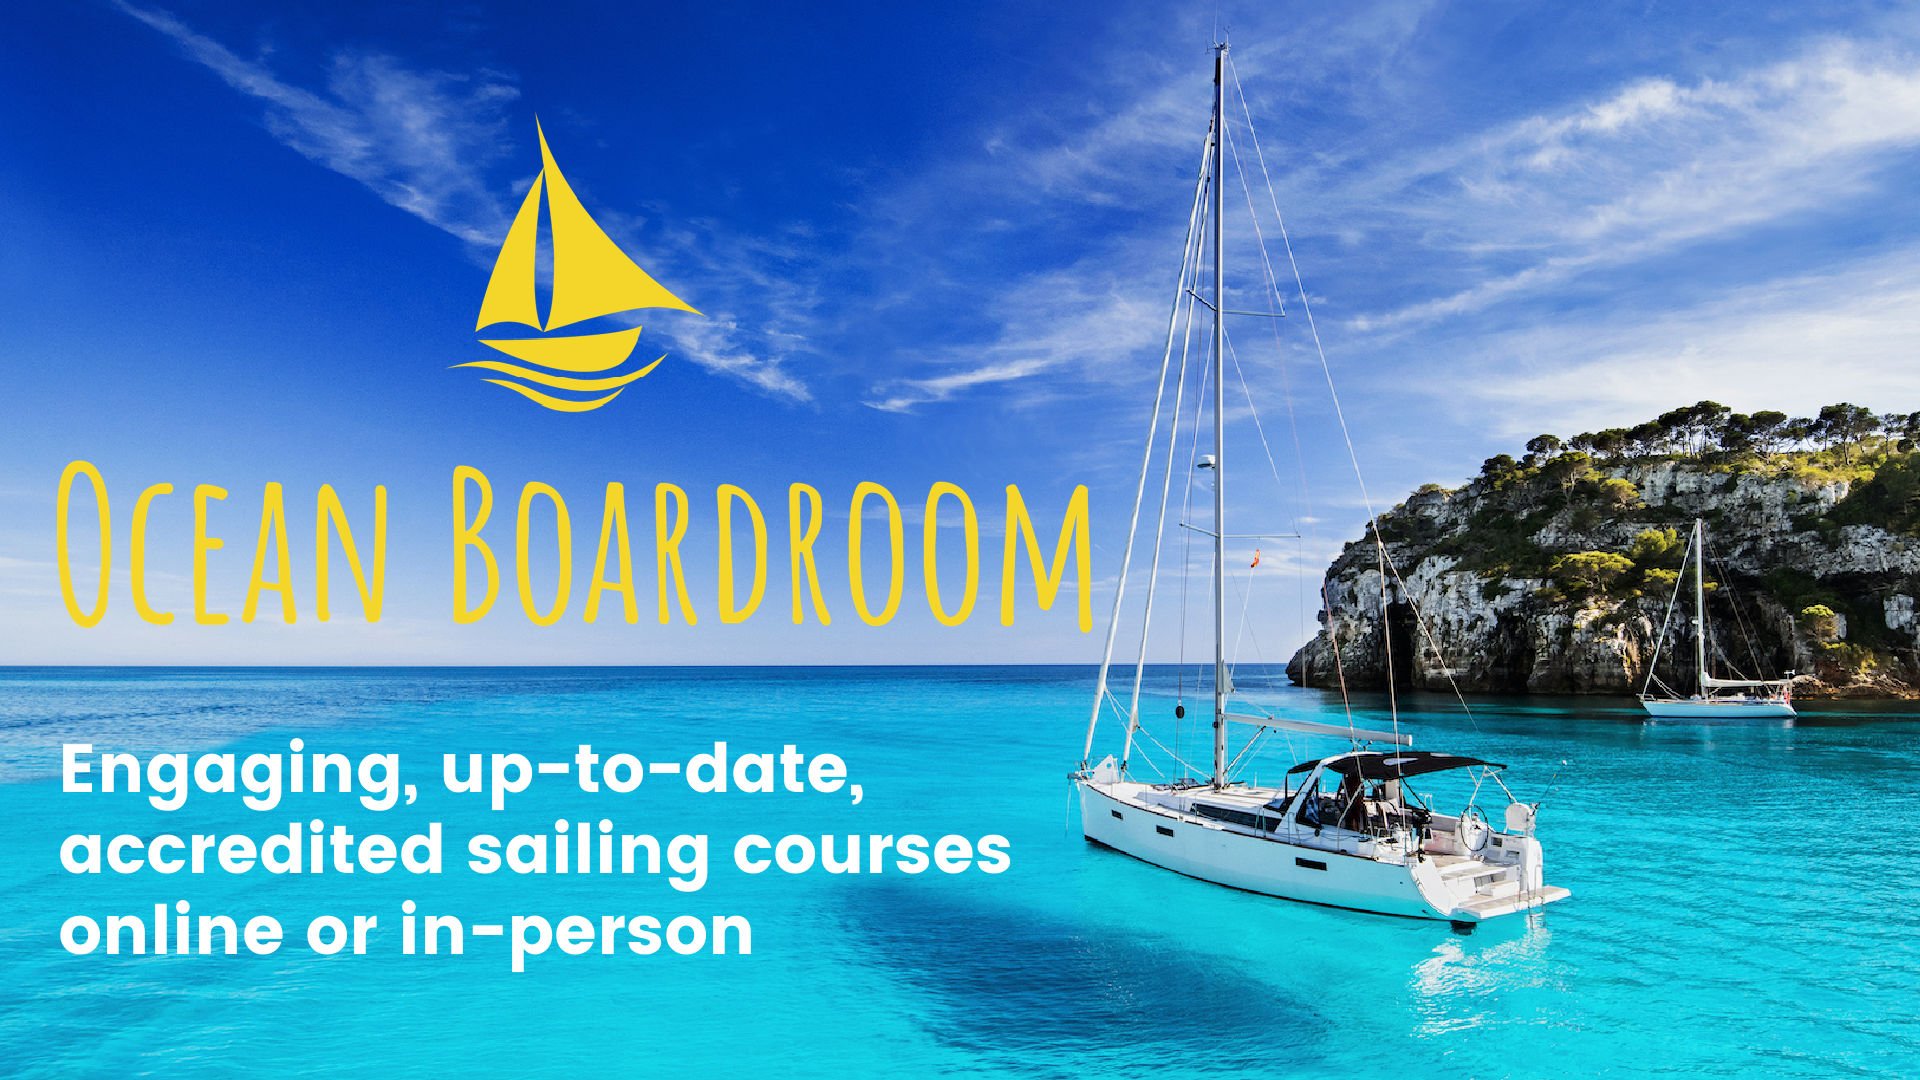 Ocean Boardroom Sailing Courses